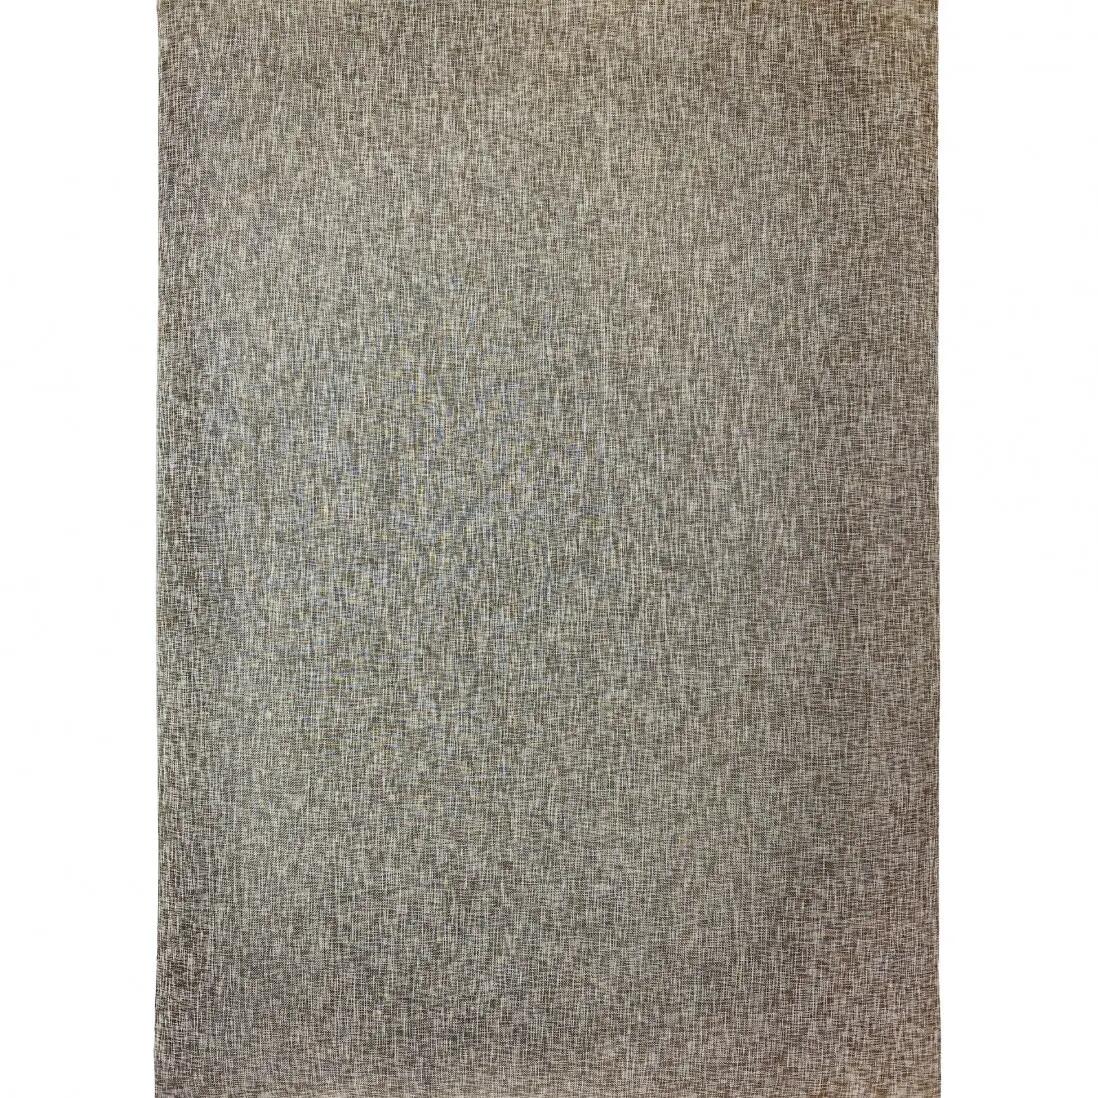 Alfombra pasillera pvc denon 001/002 beige 67x250cm